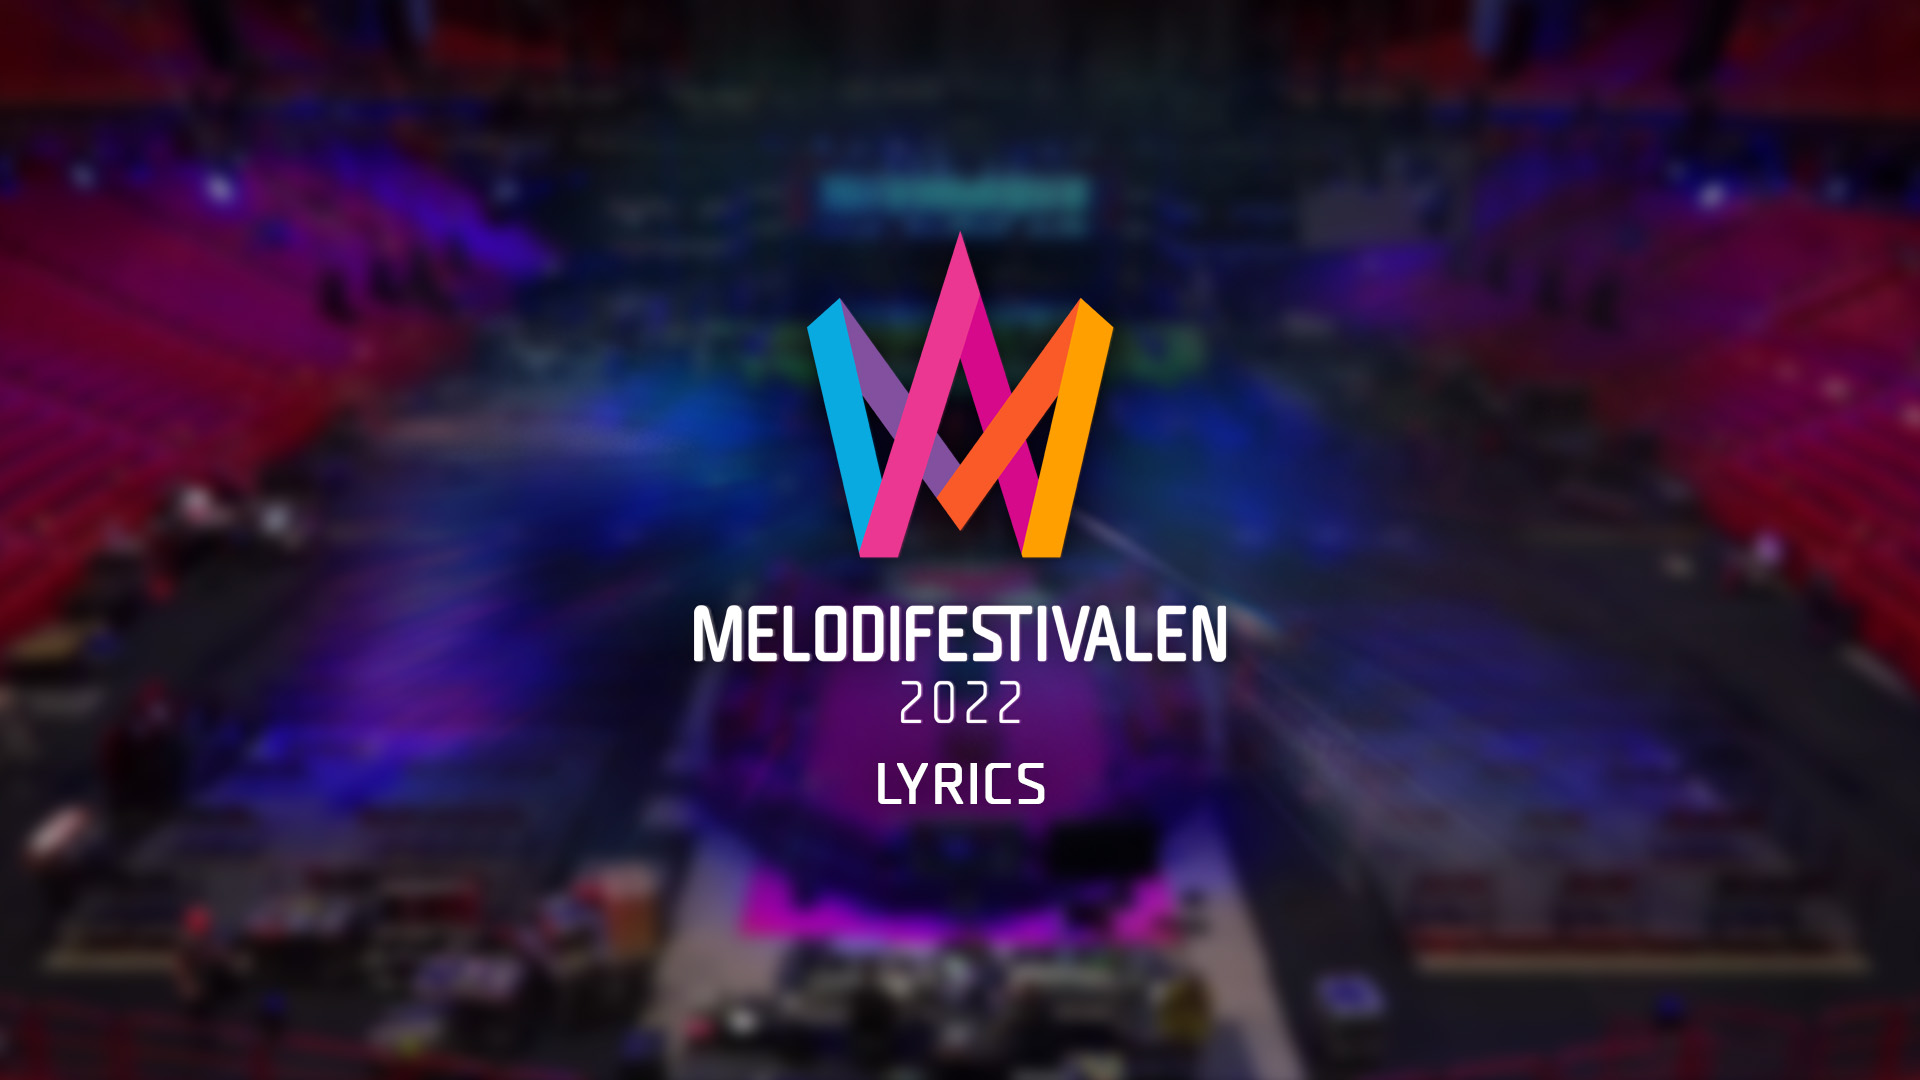 Presentadas las letras de los temas de la cuarta eliminatoria del Melodifestivalen 2022